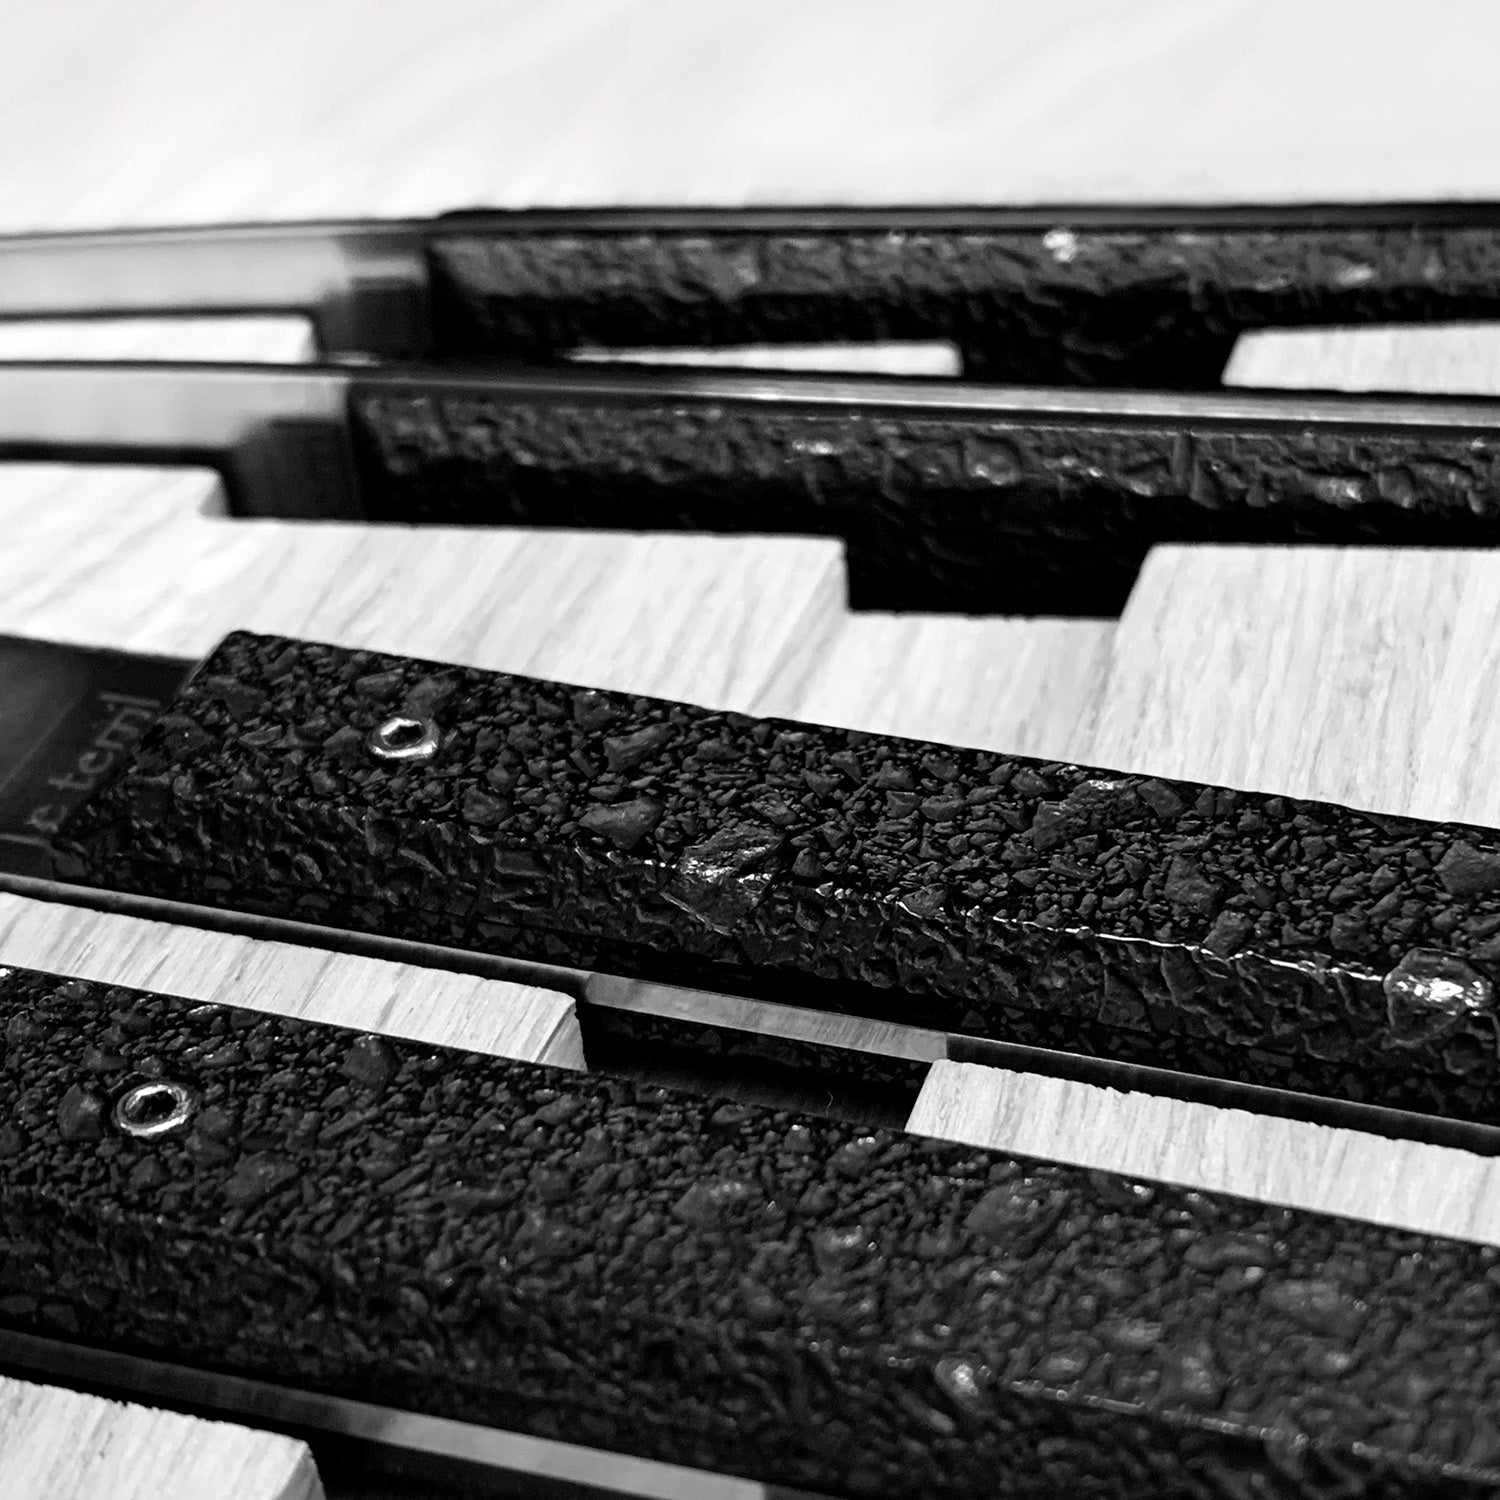 6 Tischmesser aus roher Holzkohle